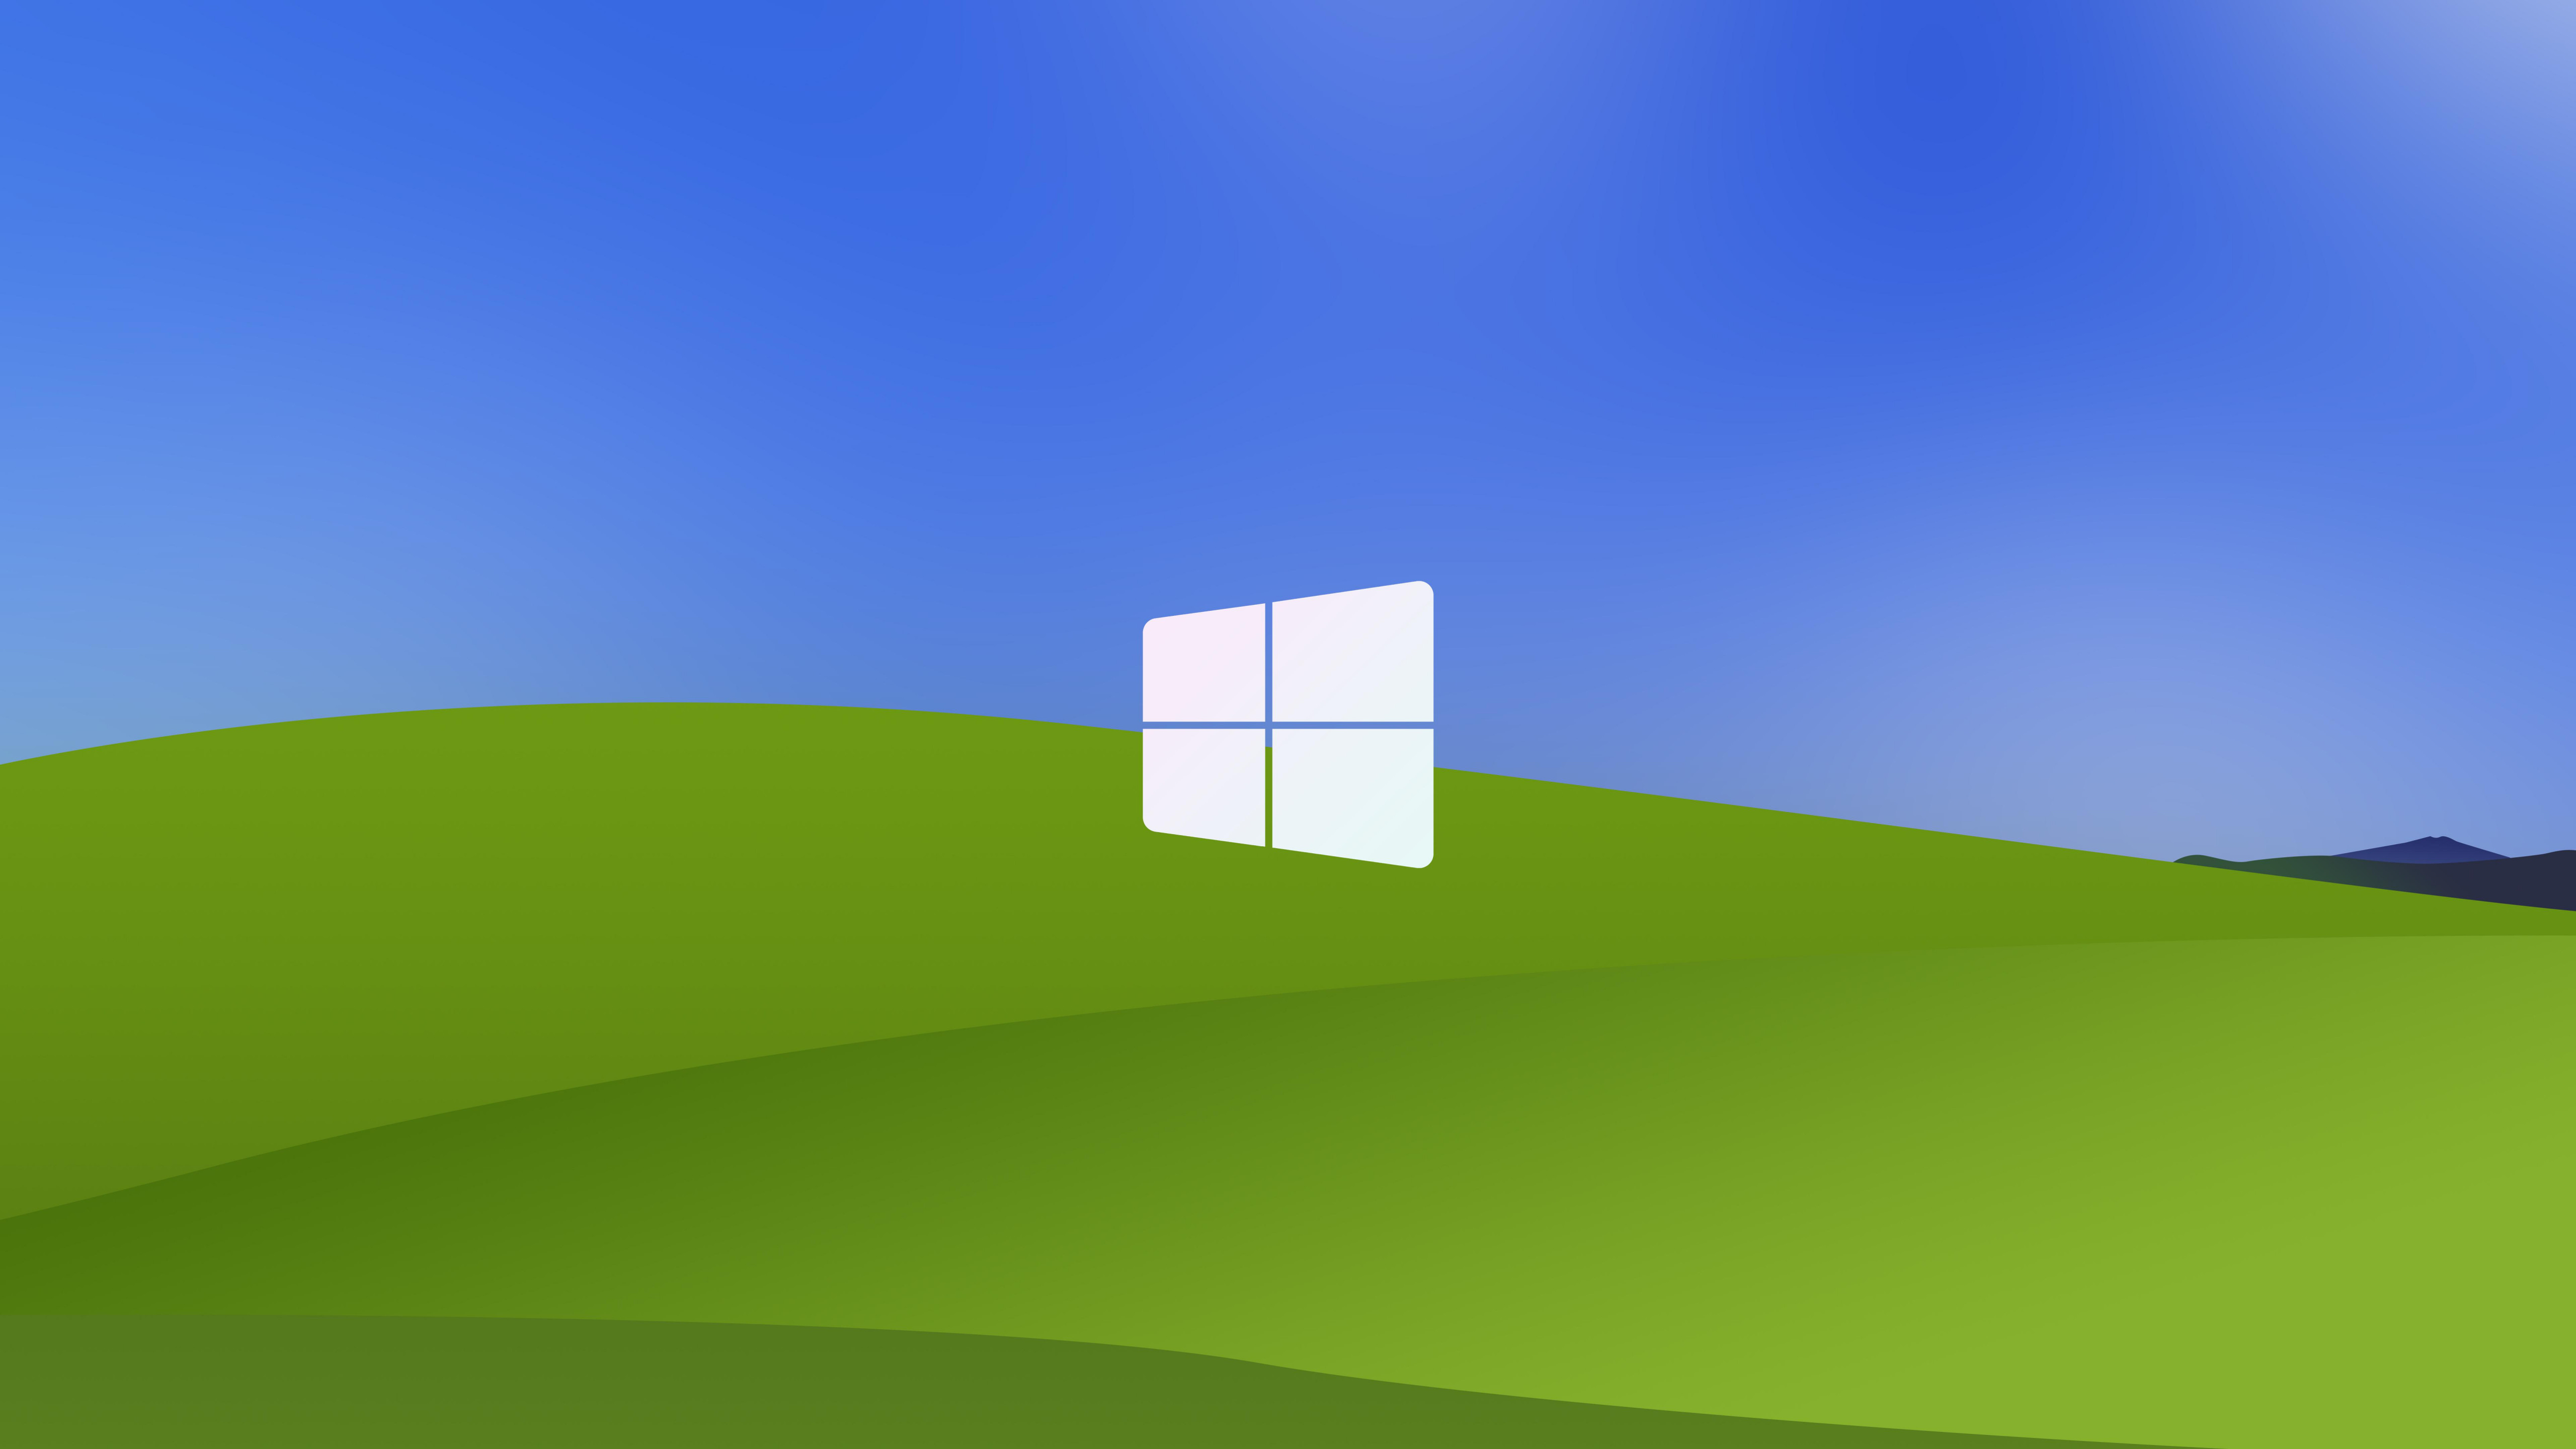 Windows XP 8K là một trong những phiên bản Windows được yêu thích nhất trên thế giới. Và bây giờ, bạn có thể làm mới máy tính của mình với những bức hình nền Windows XP 8K độ phân giải cao. Thưởng thức những hình ảnh quen thuộc này nhưng trong chất lượng tuyệt đẹp!